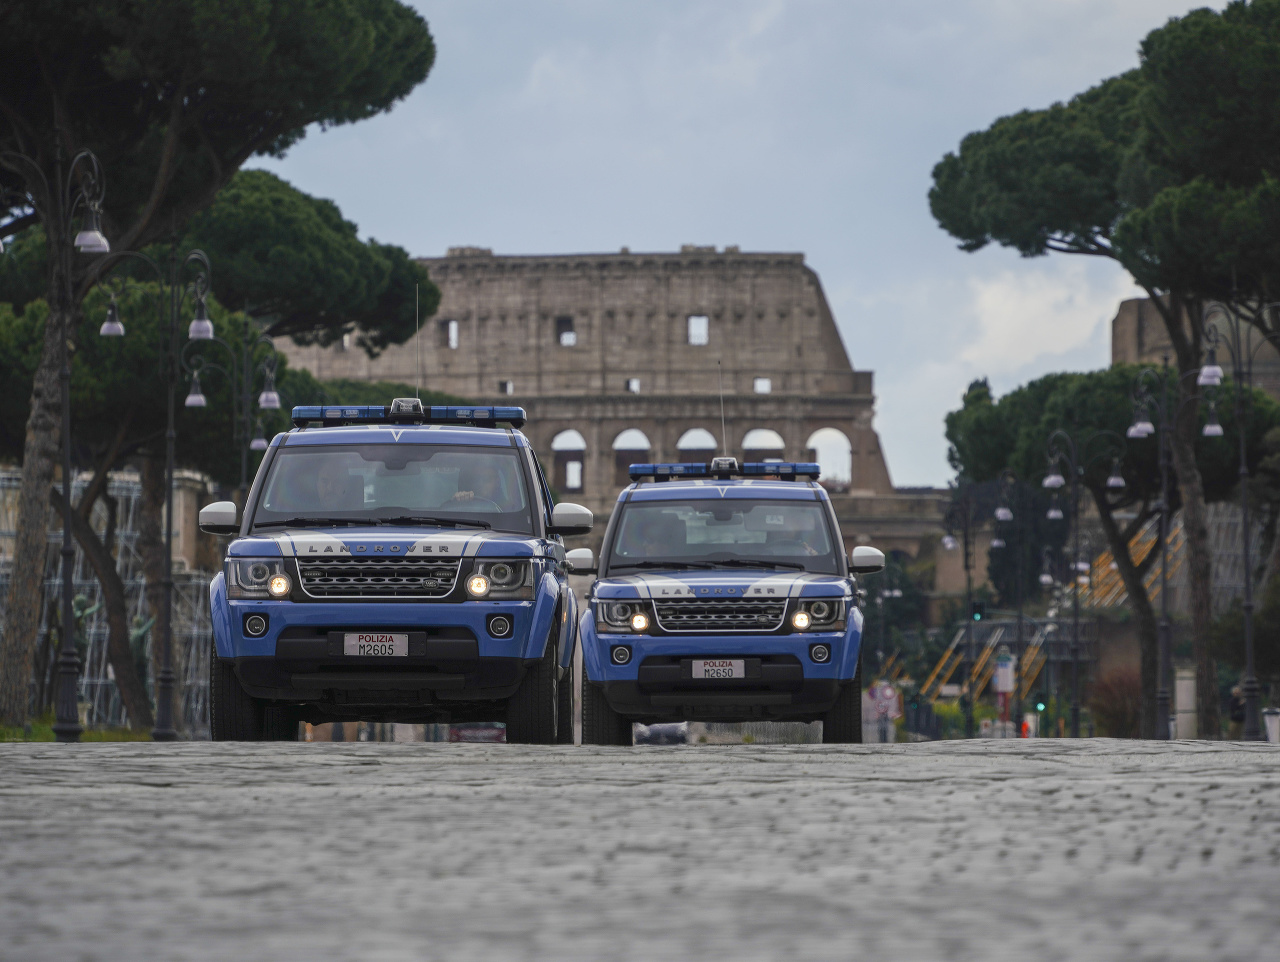 Policajné autá hliadkujú na ulici pred Koloseom v Ríme.